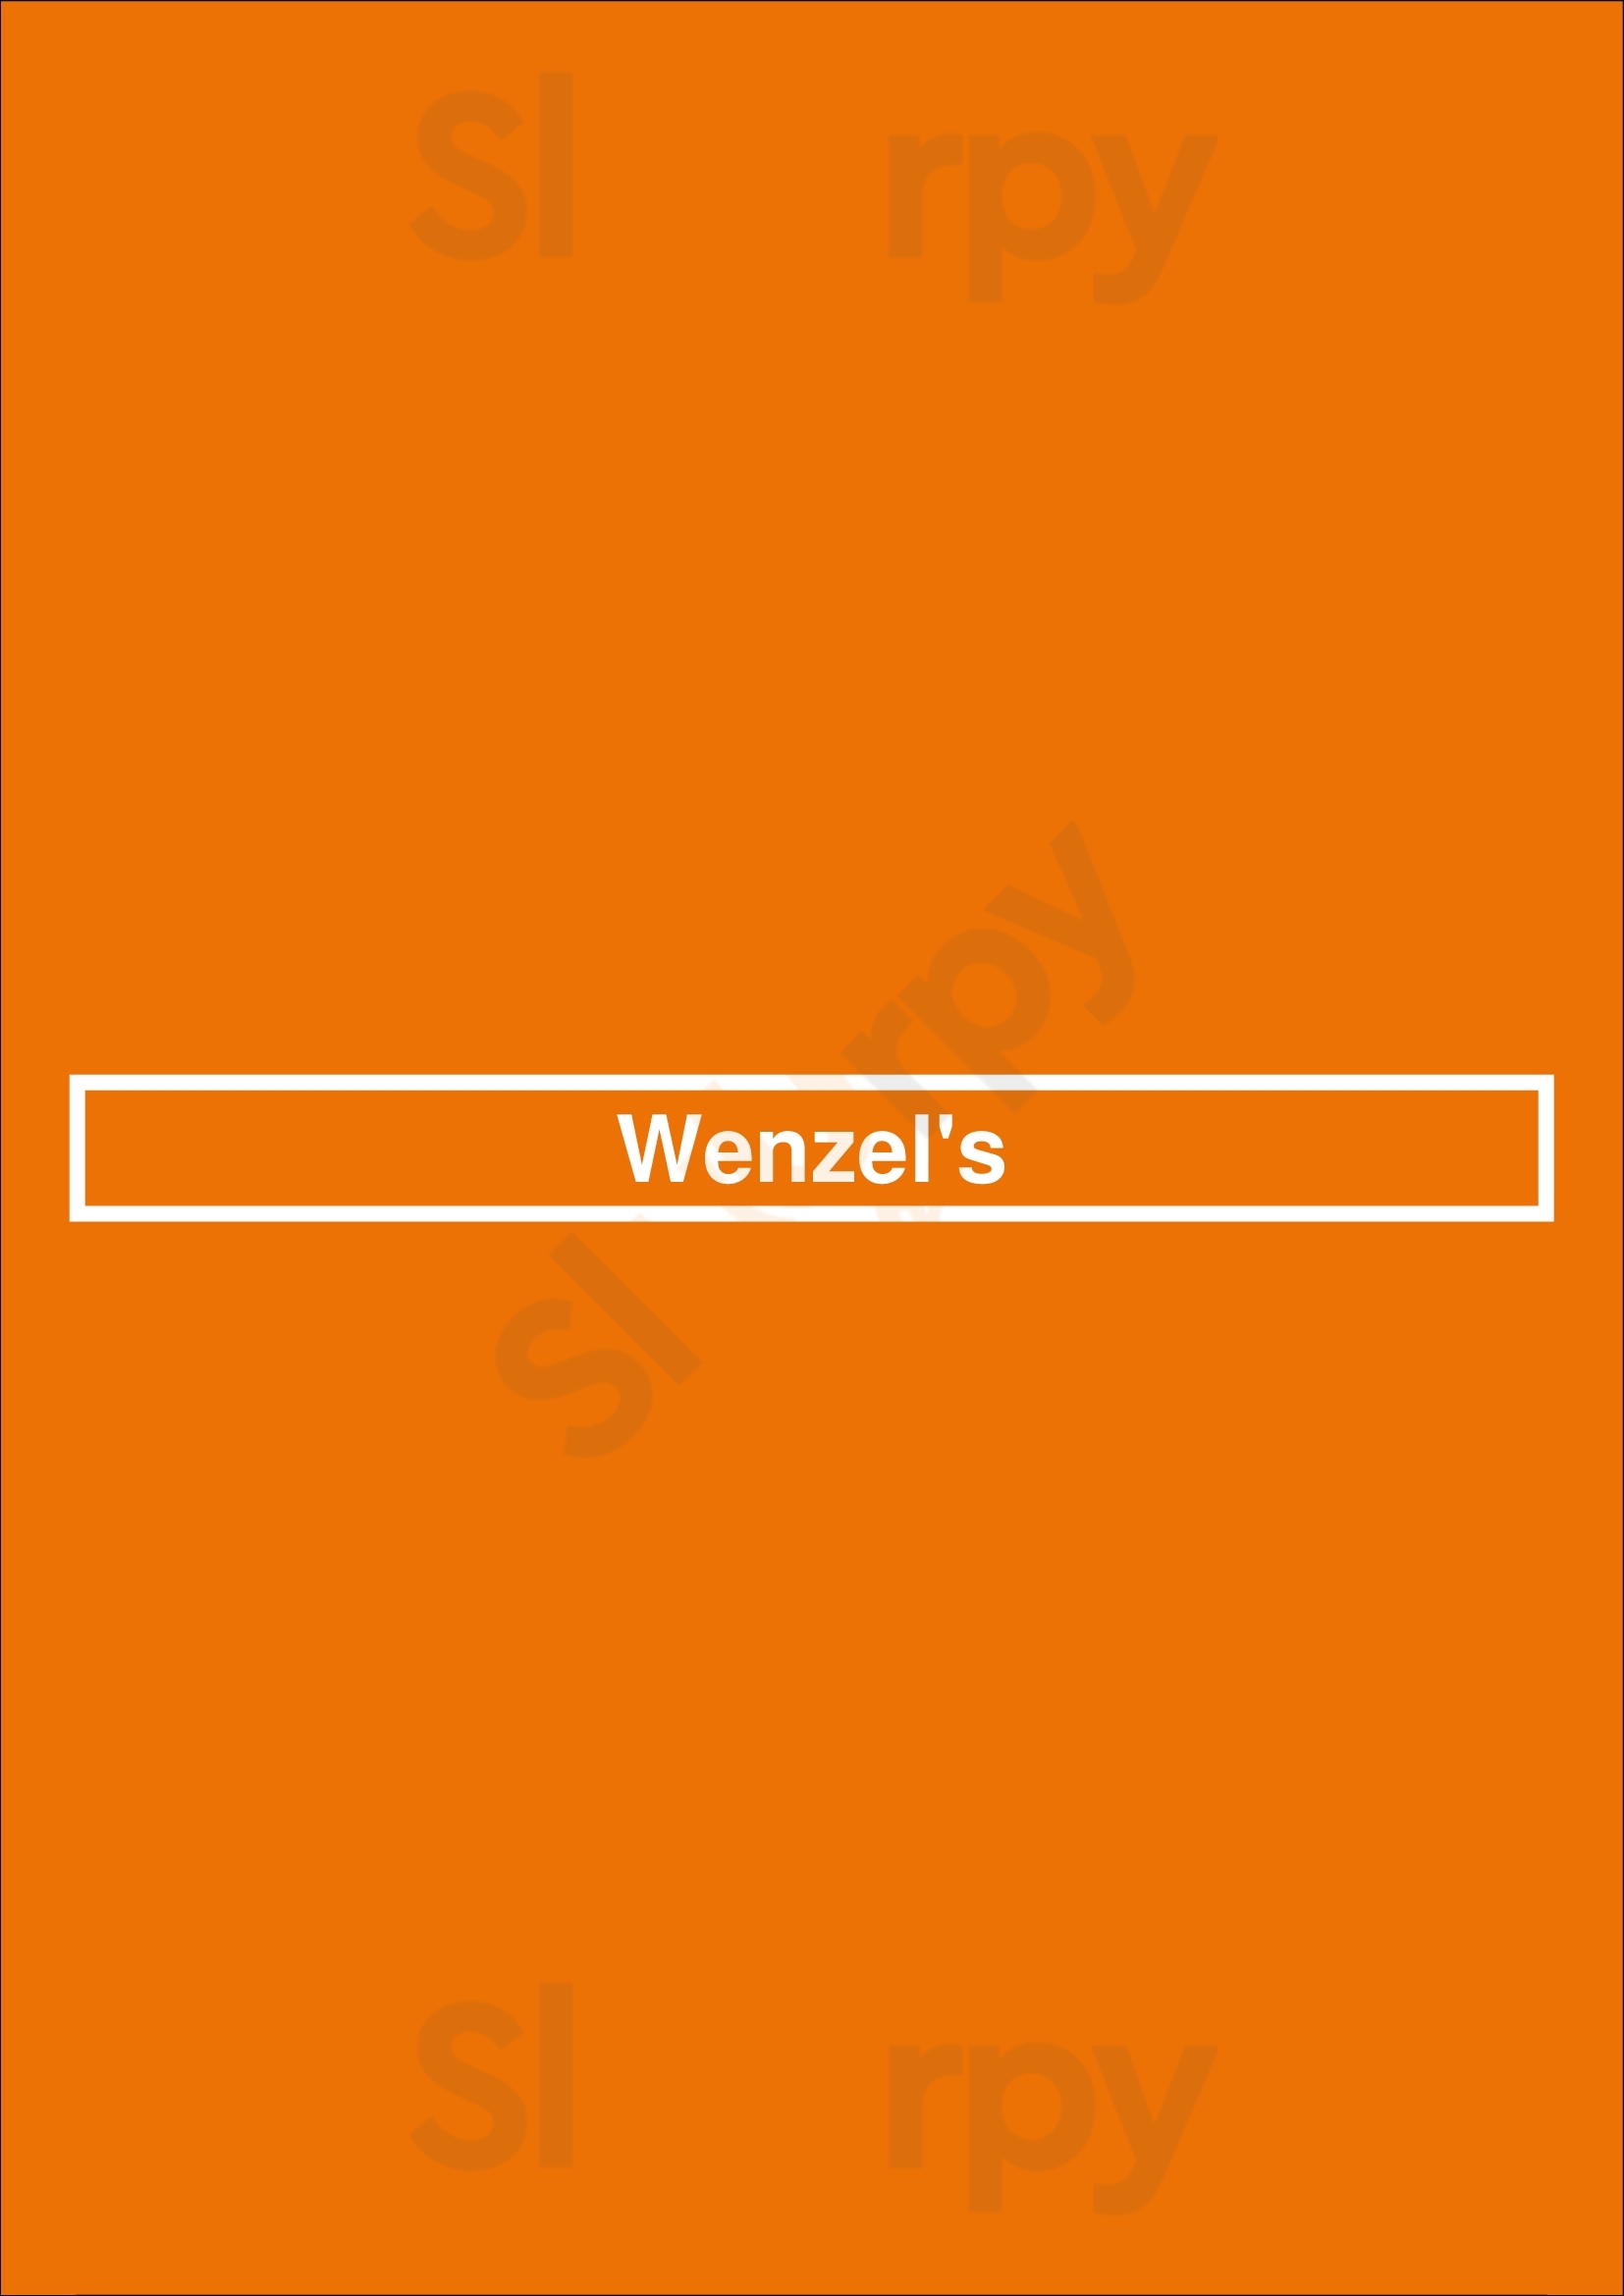 Wenzel's London Menu - 1